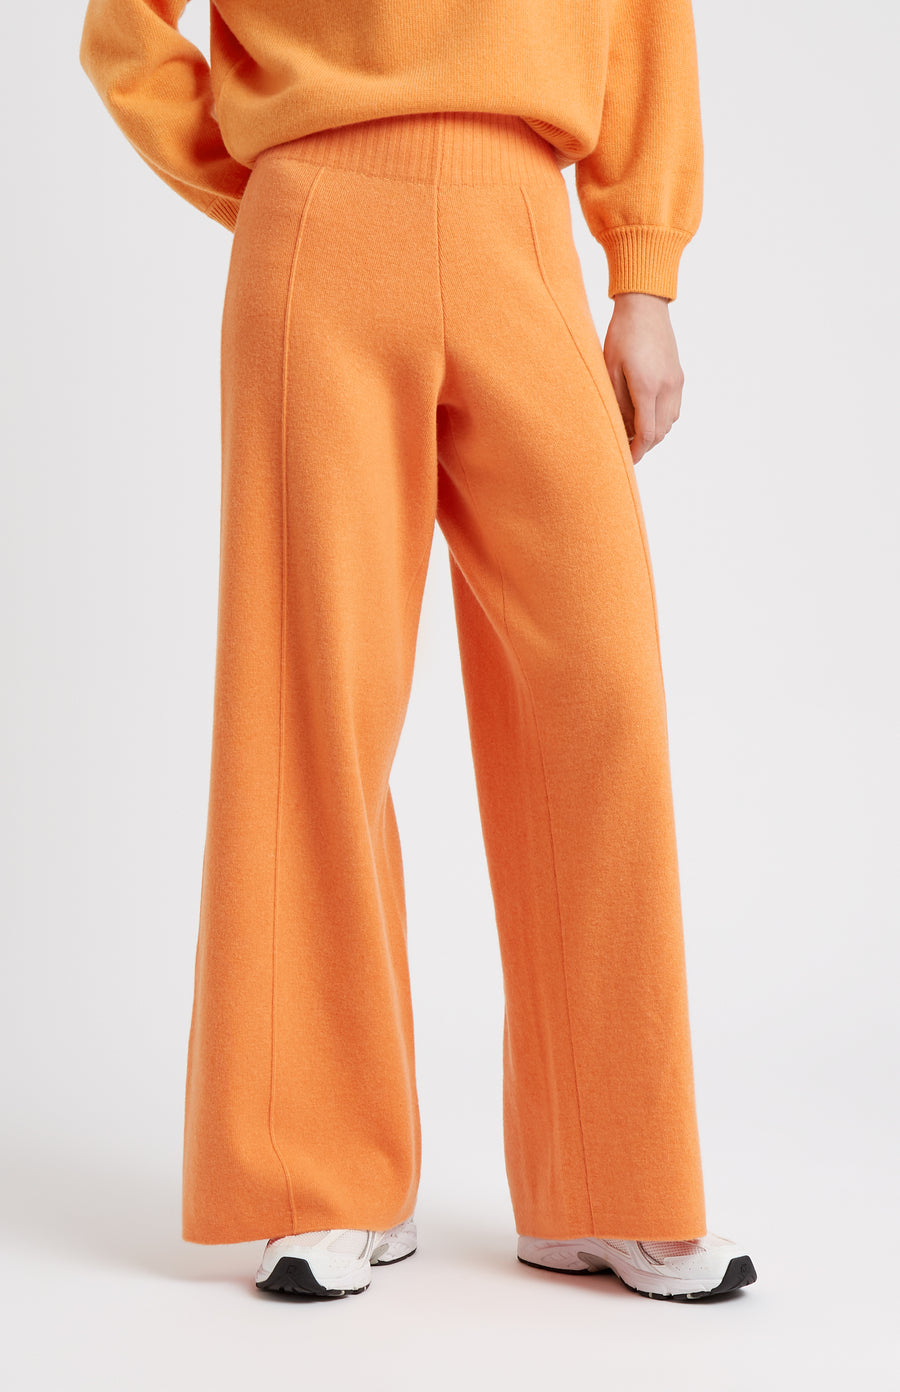 Rust Orange Lounge Pants, Women's Loungewear